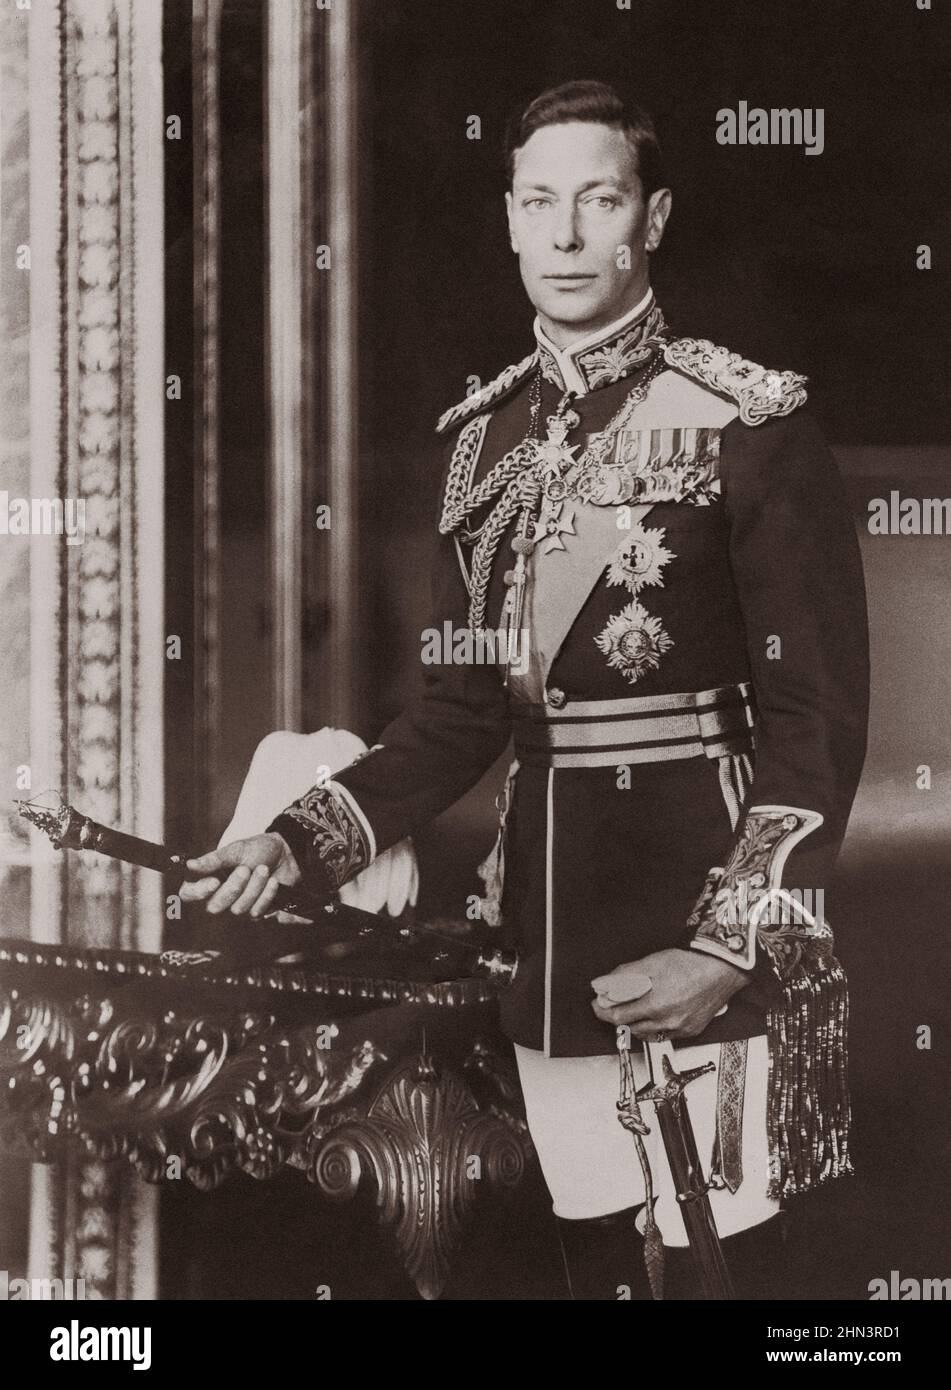 Sa Majesté le roi George VI de Grande-Bretagne. 1940s George VI (Albert Frederick Arthur George; 1895 – 1952) était roi du Royaume-Uni et de la Domi Banque D'Images